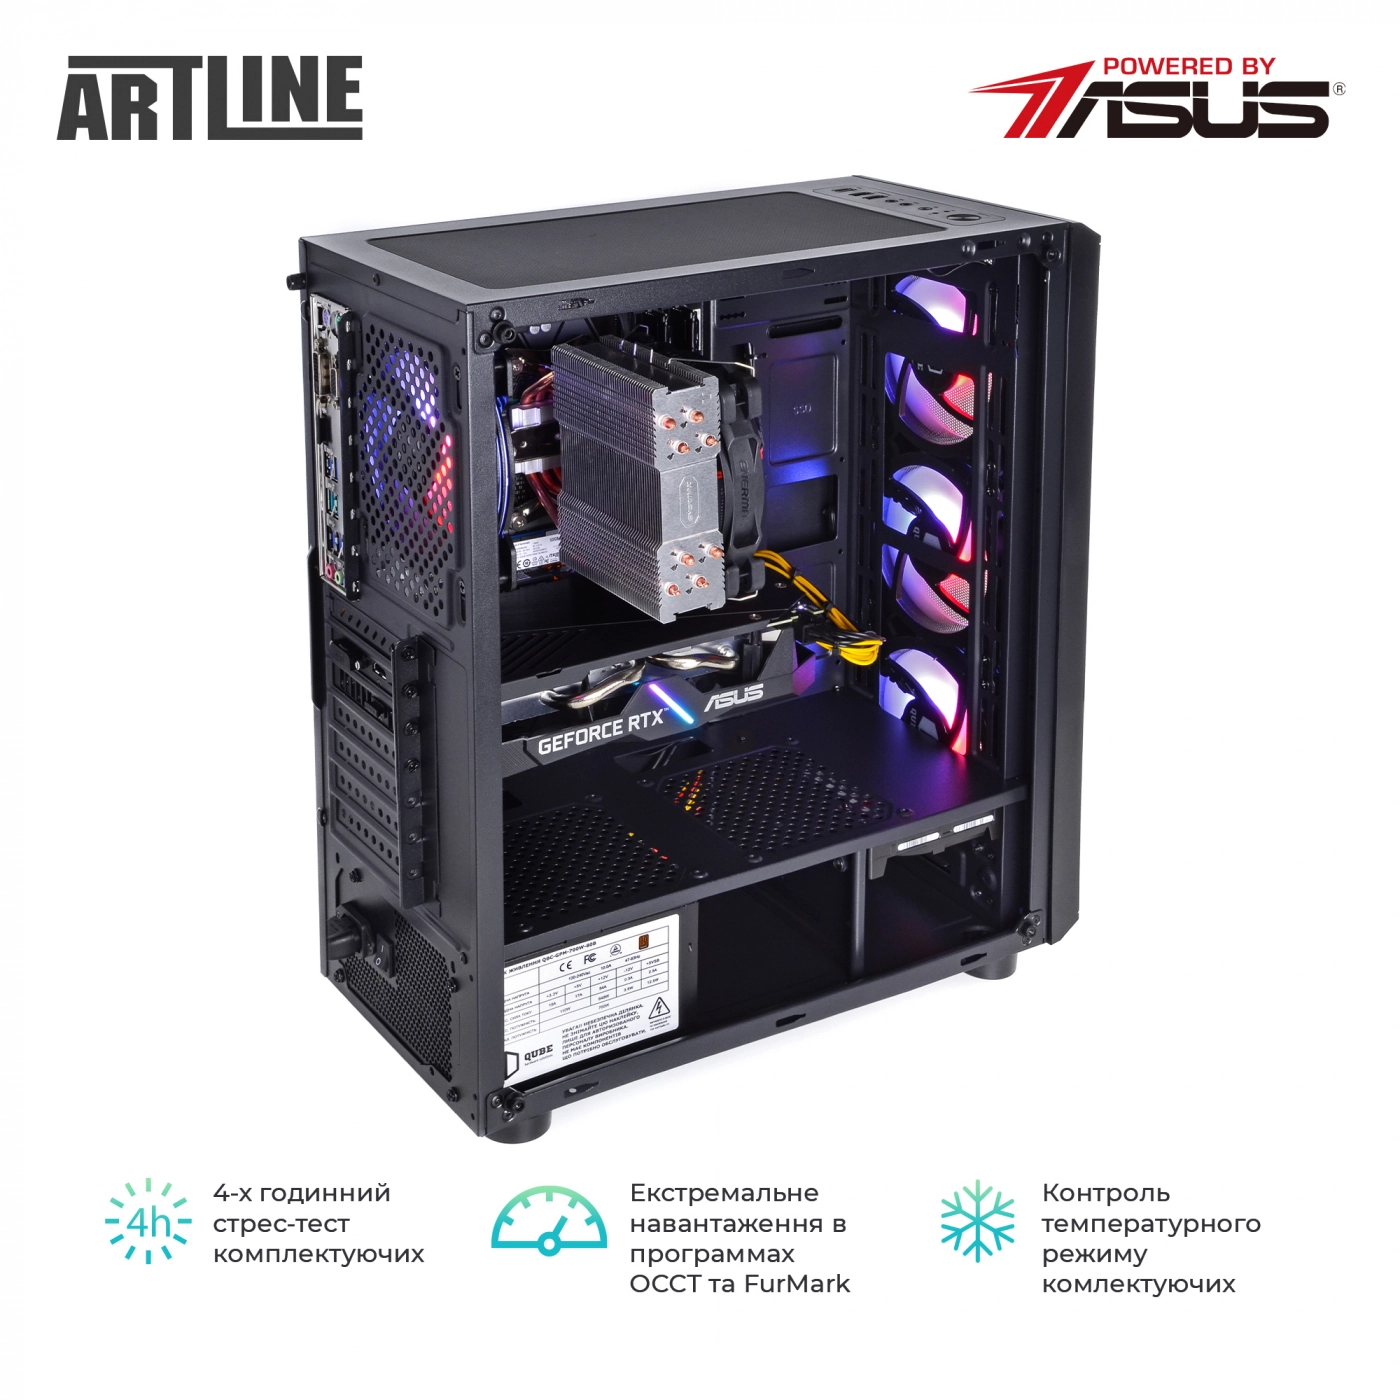 Купить Компьютер ARTLINE Gaming X66v17 - фото 9